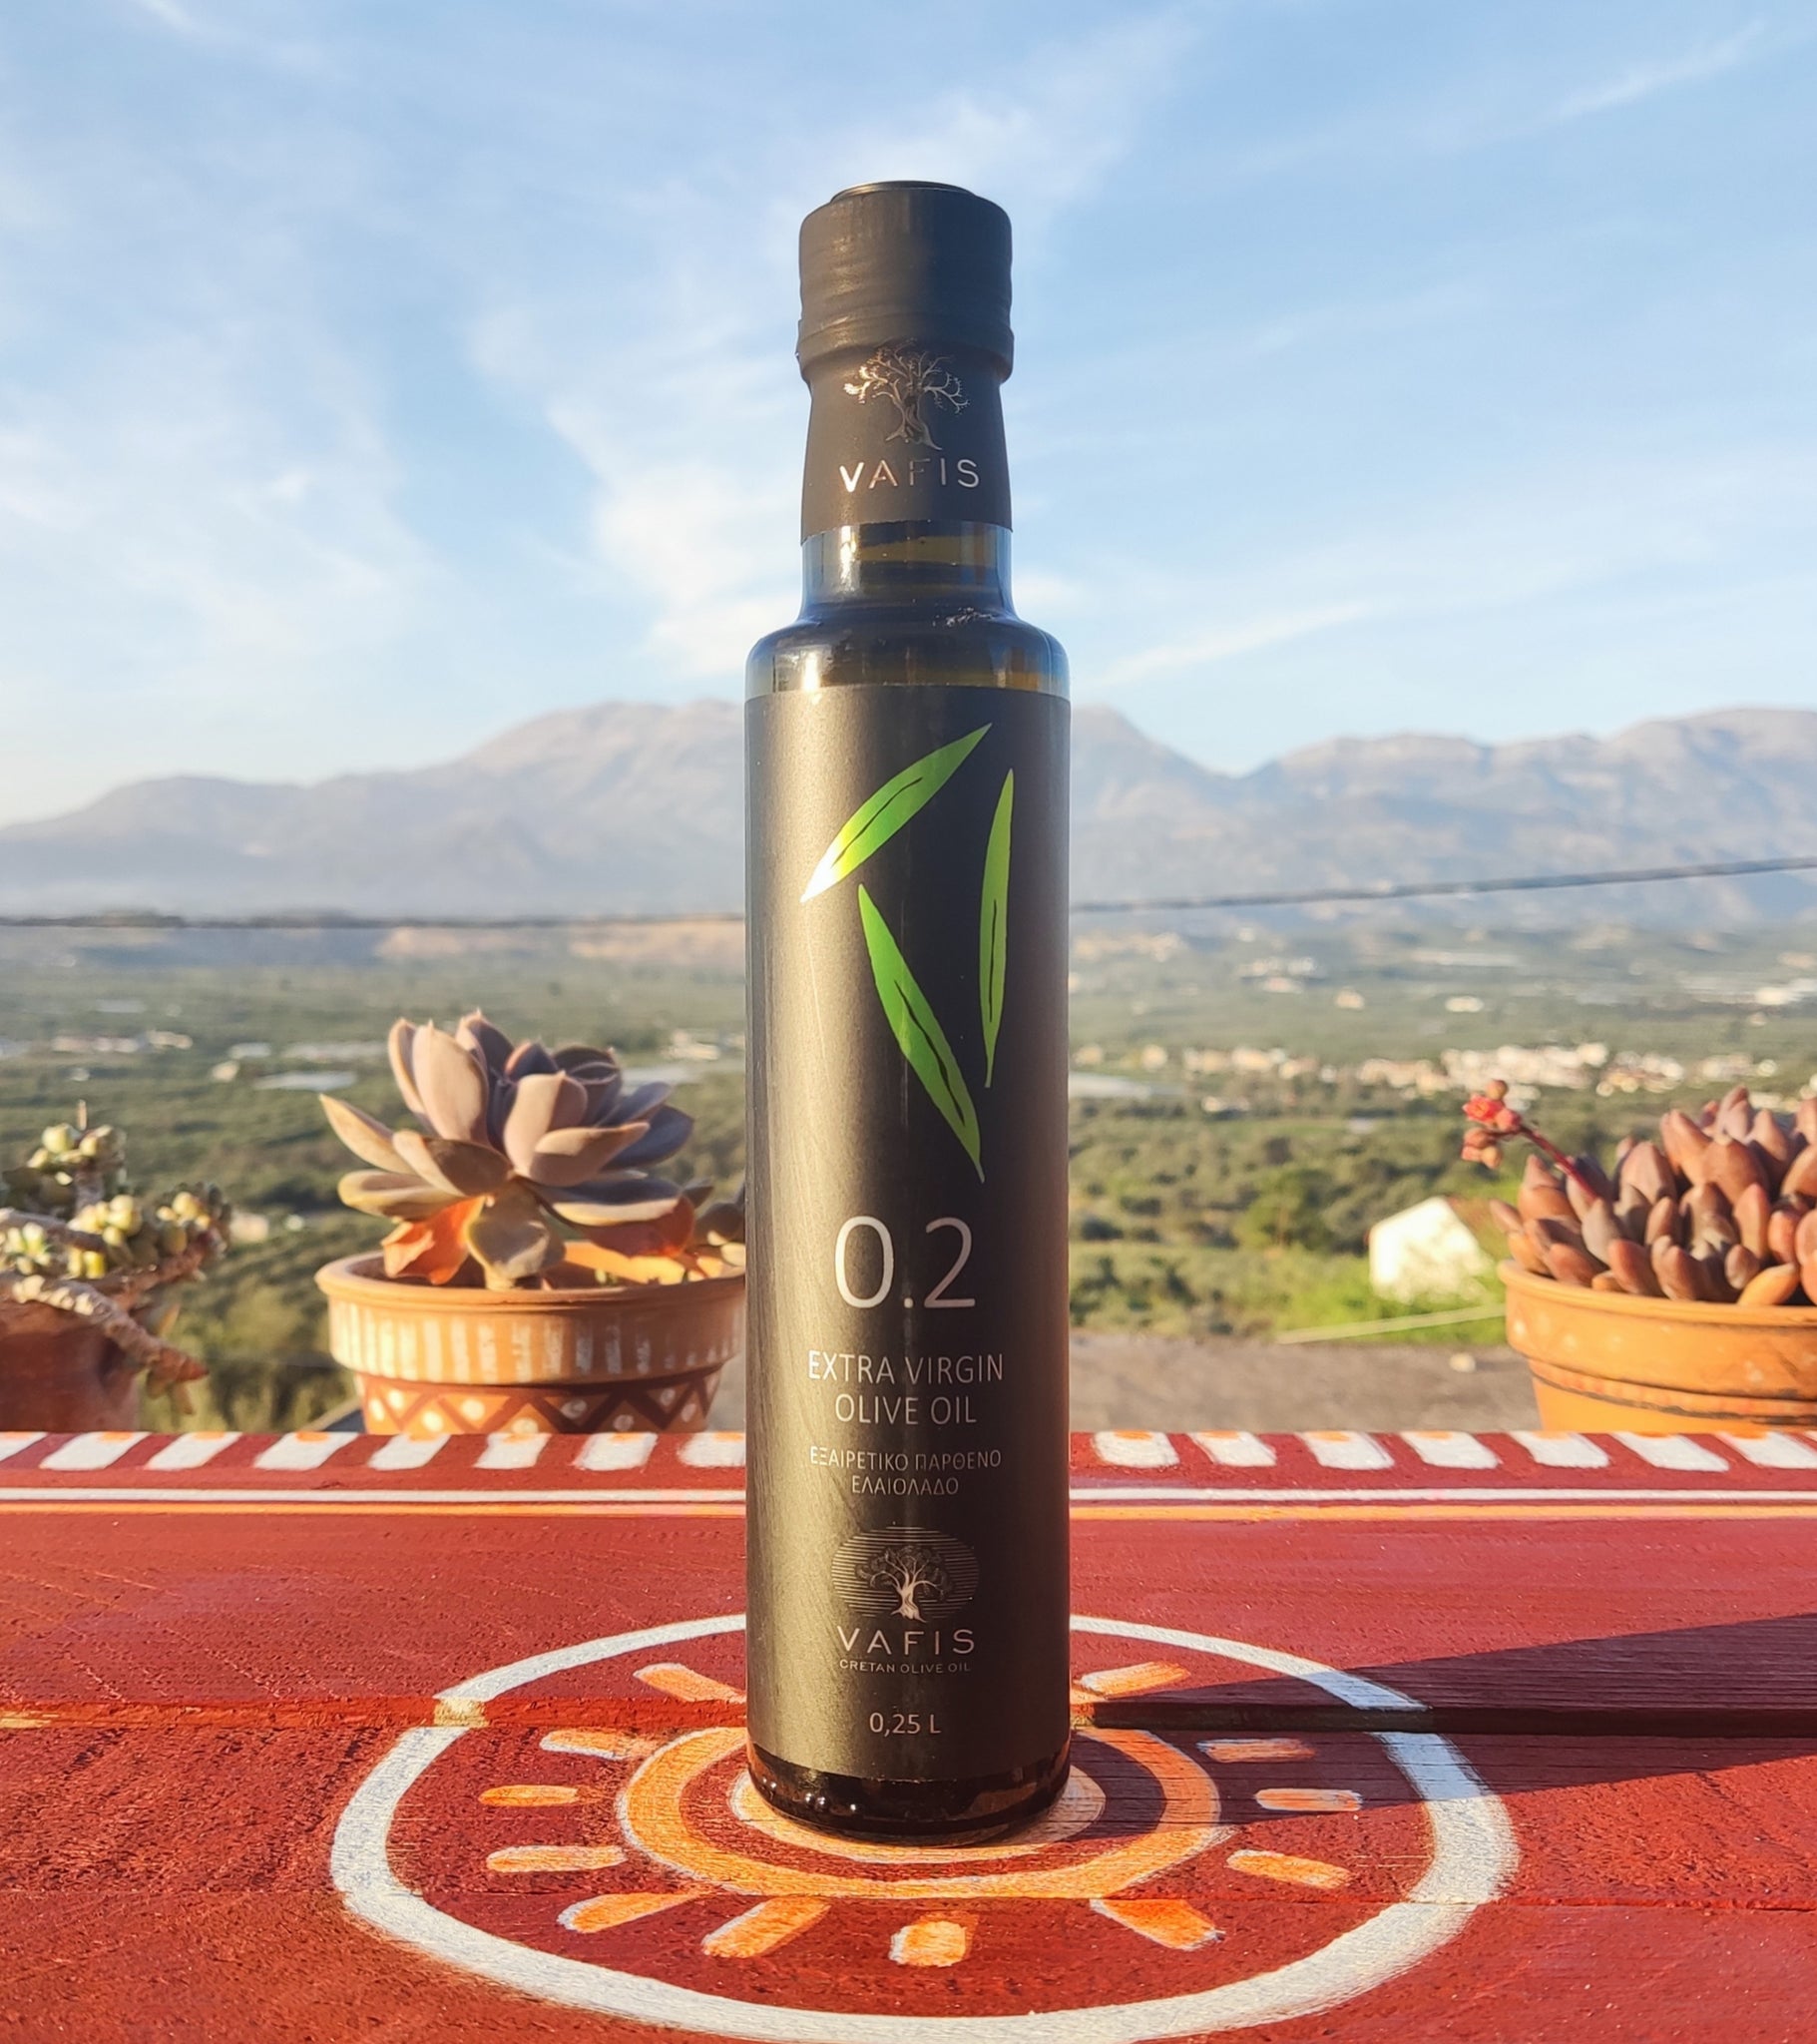 Premium 0.2 Extra Virgin Olive Oil